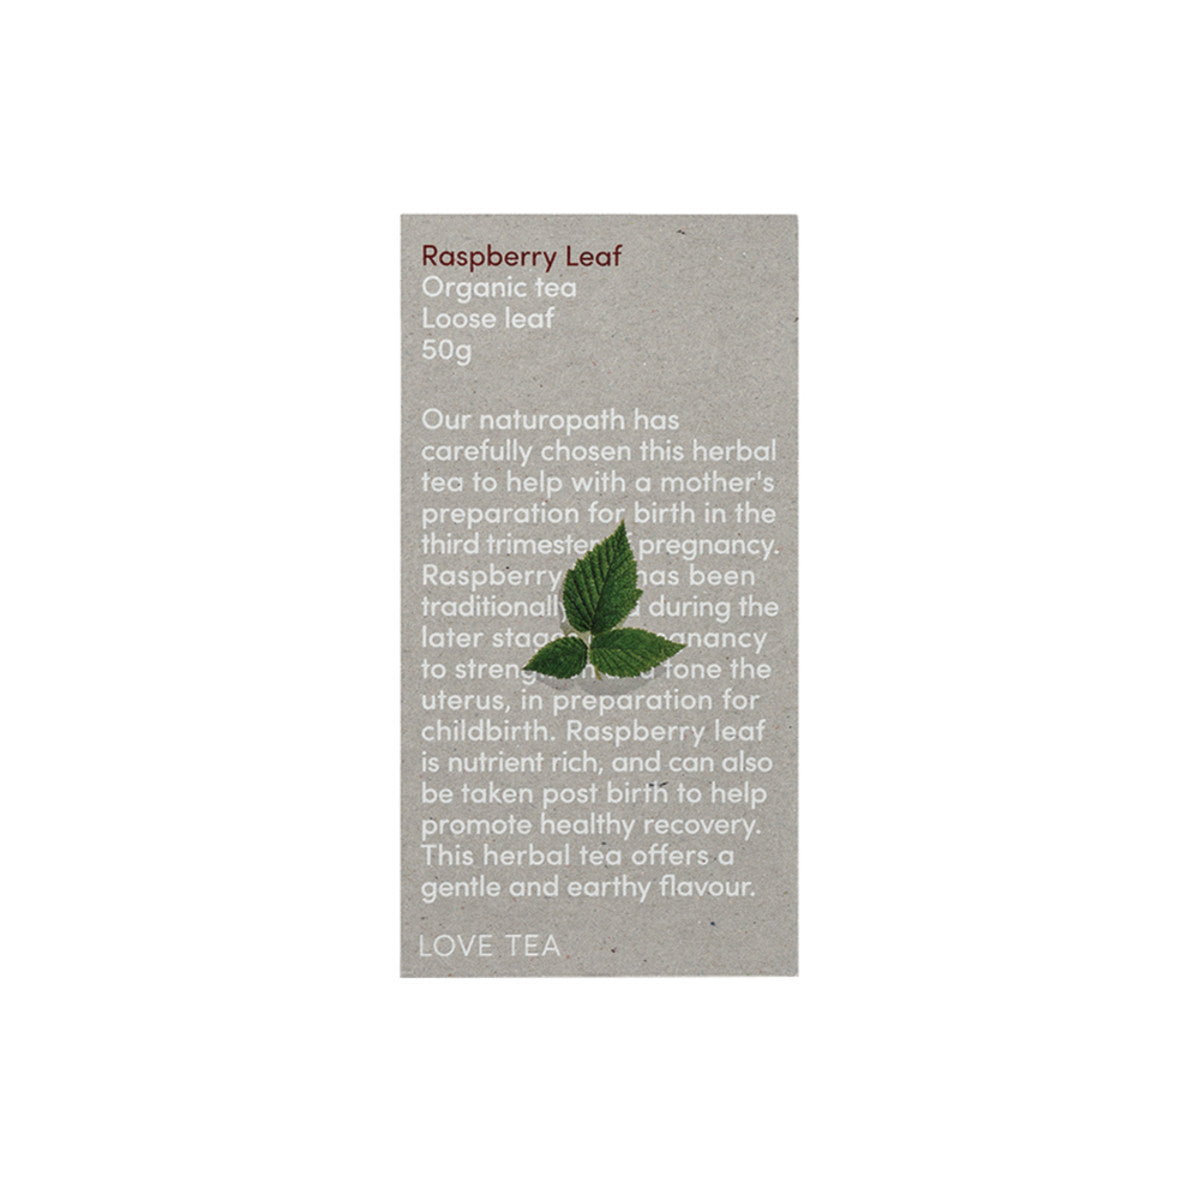 Love Tea - Organic Raspberry Leaf Loose Leaf